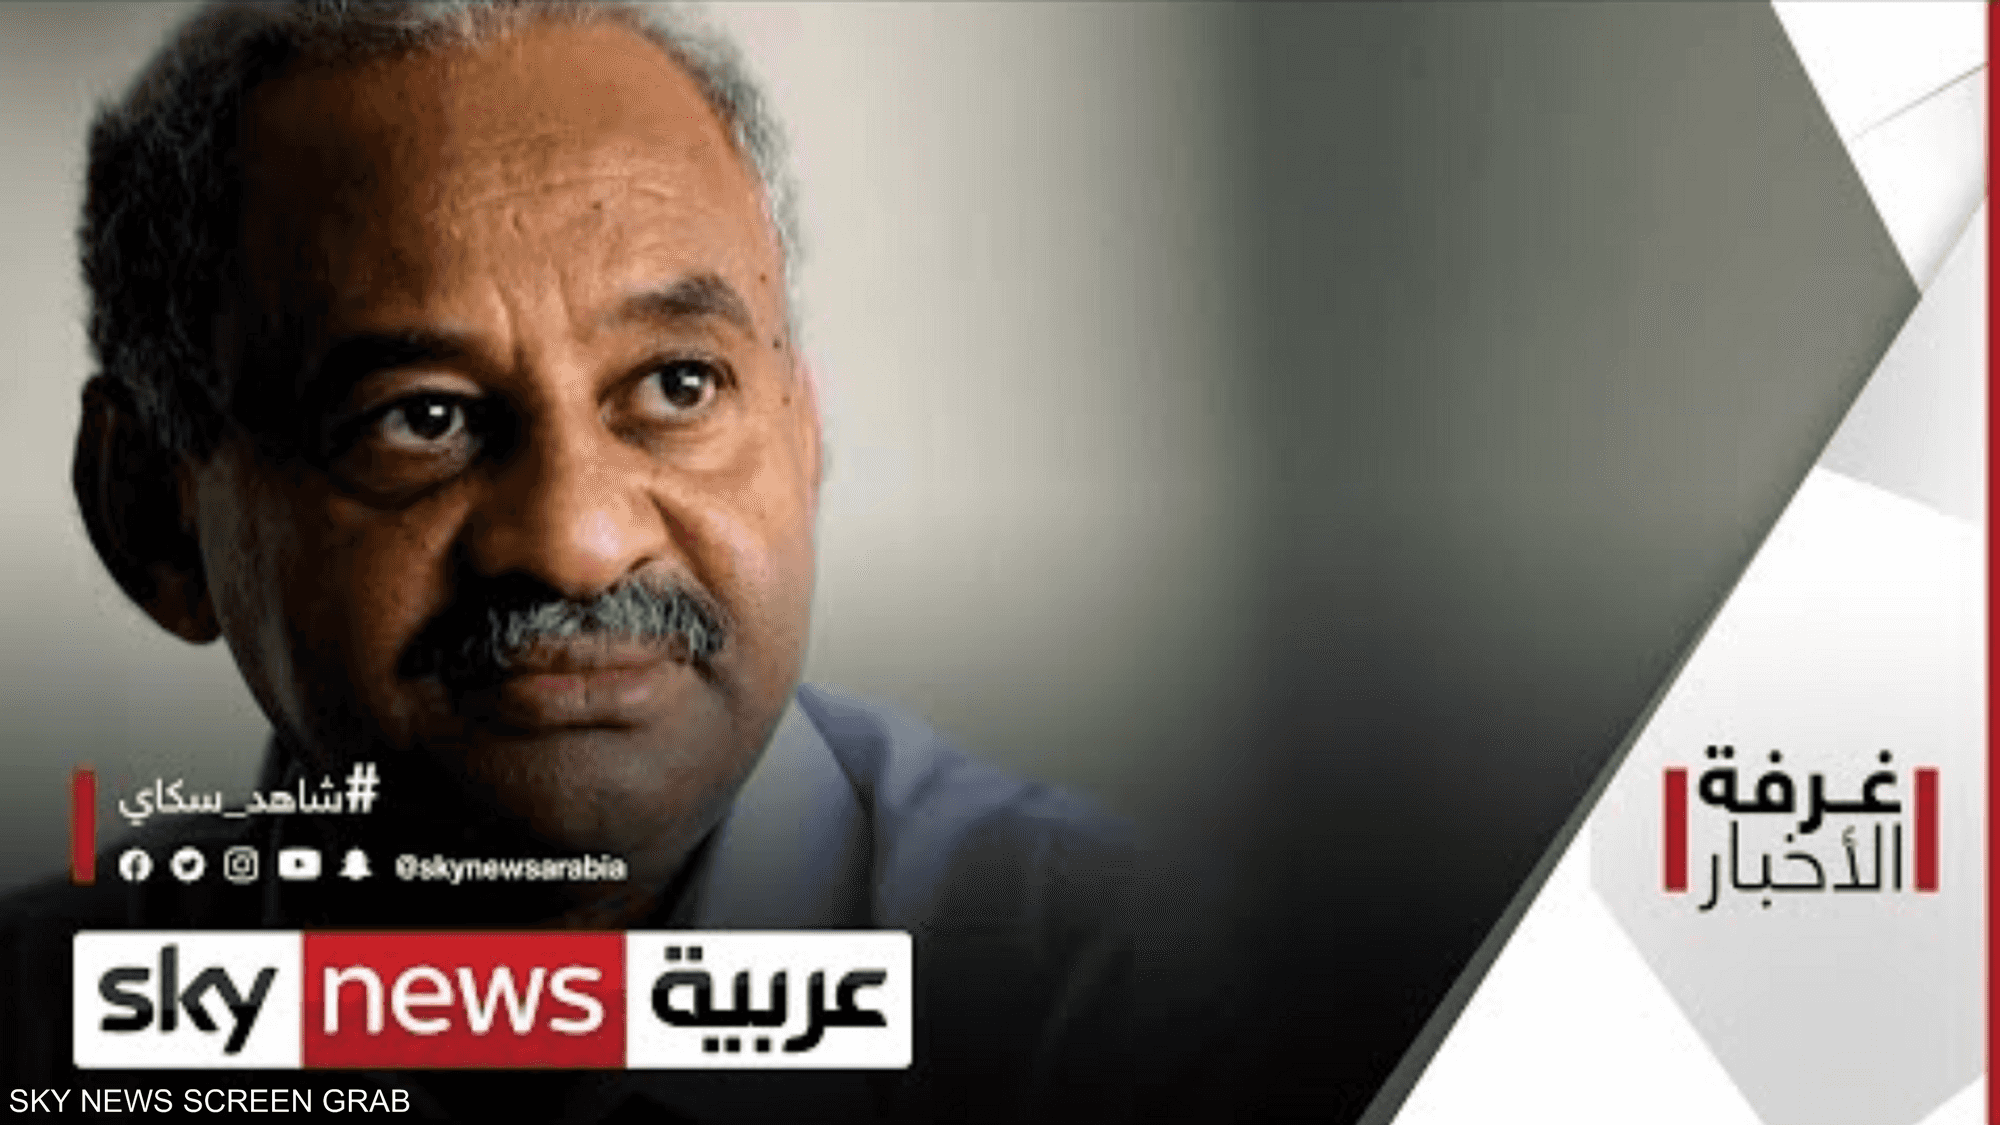 وزير الإعلام السوداني يعلق على تصريحات ترامب بشأن السودان